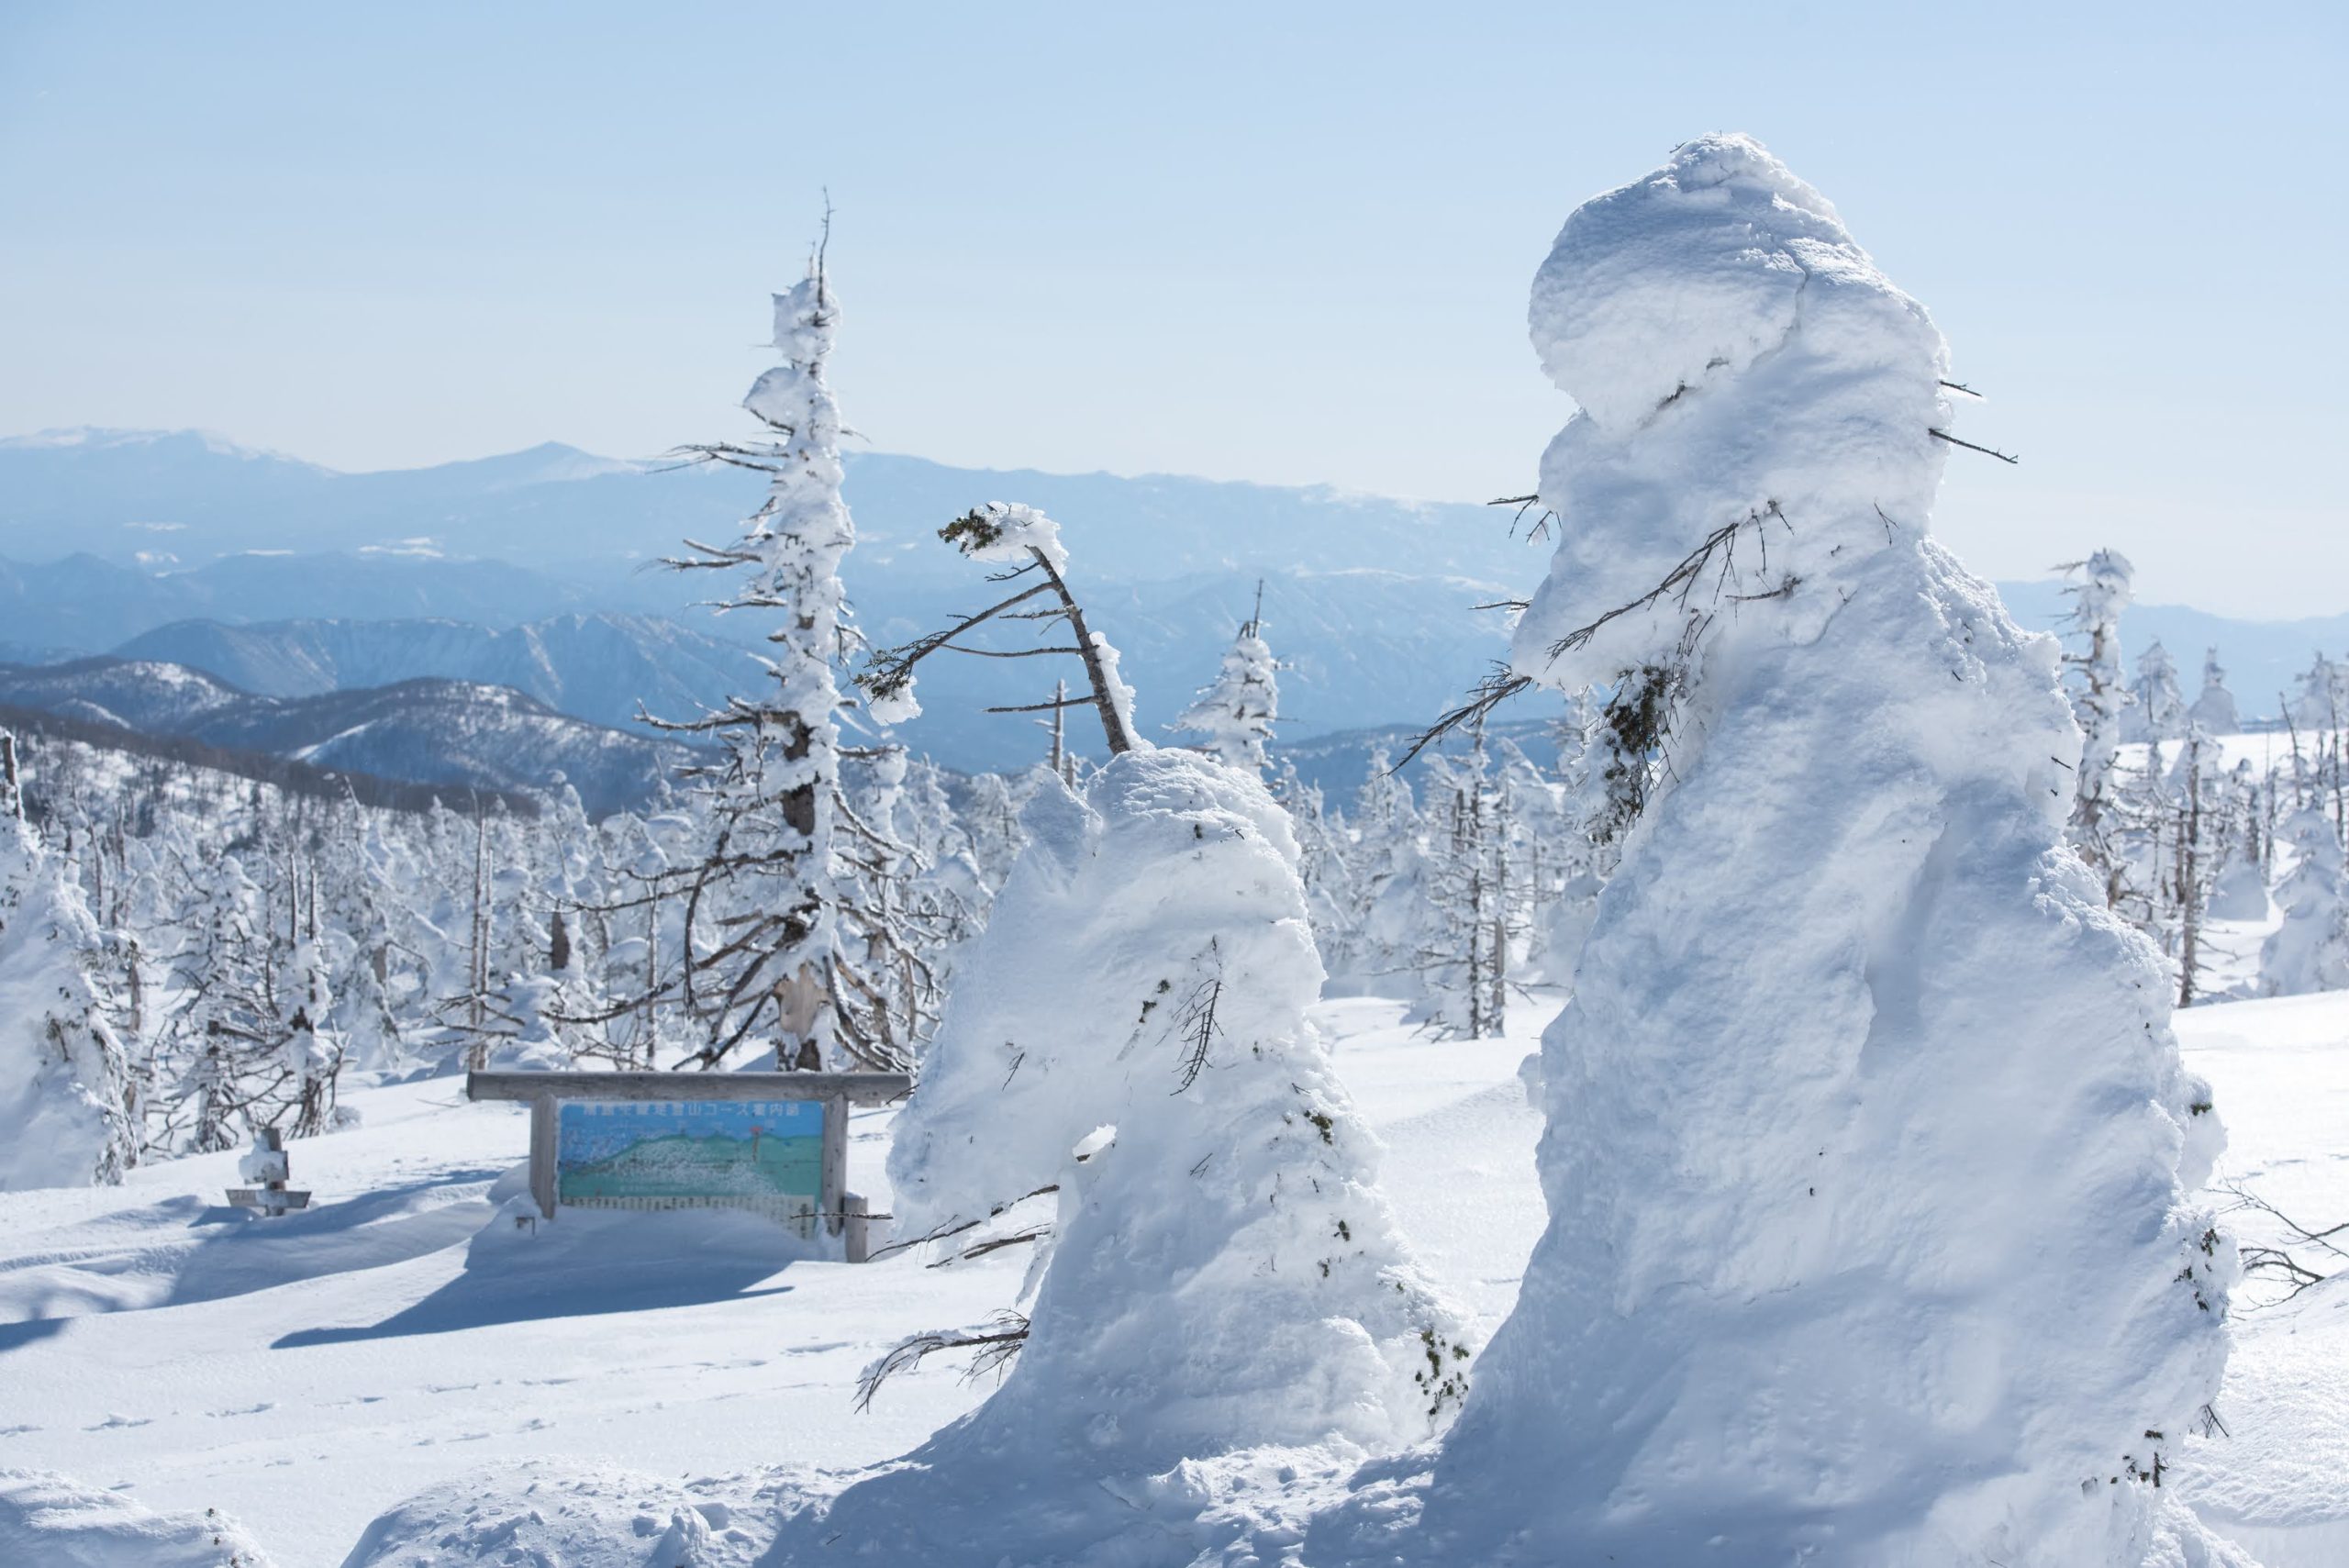 ■在日本，只有冬季东北才会有这样宝贵的冰雪奇景哦！